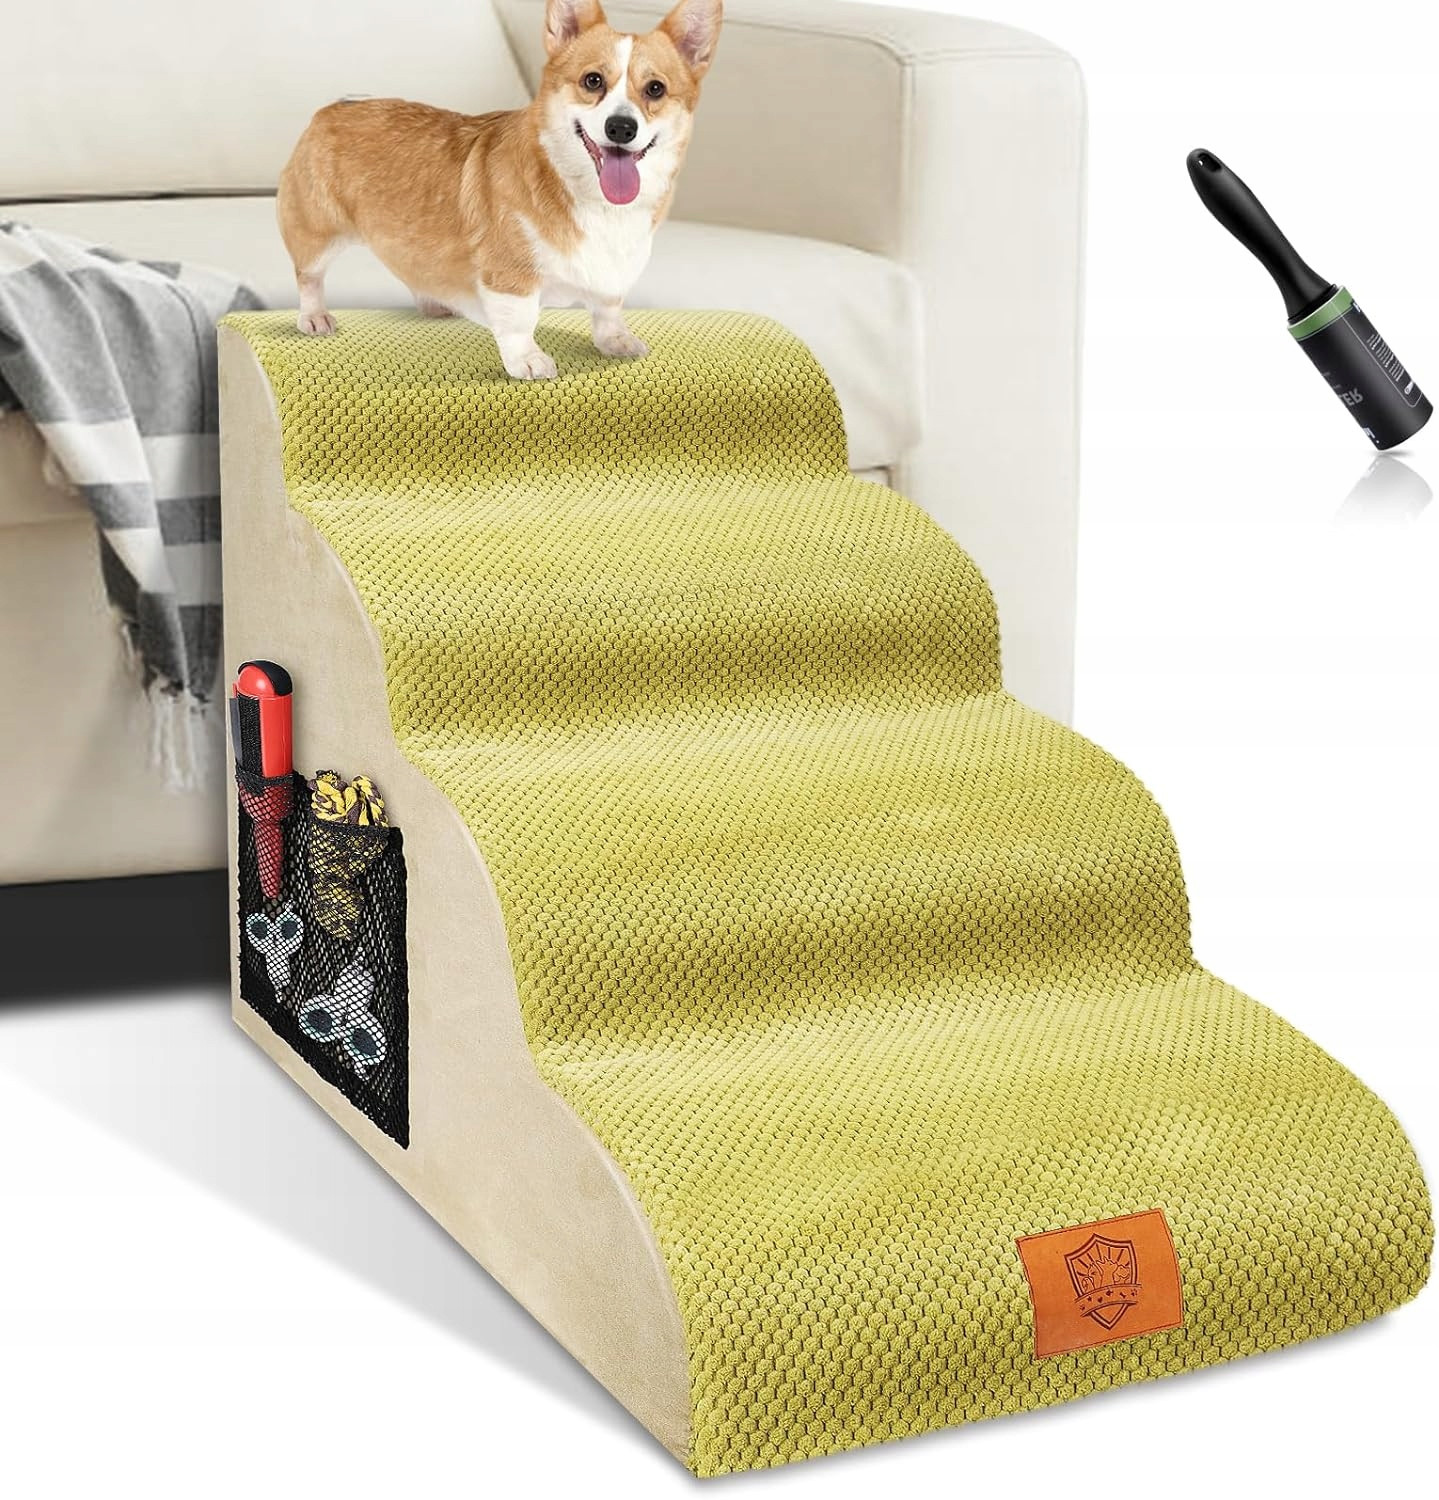 Schody pro psa 4 stupně 51cm 22kg na postel psa a kočky snadné schody matrace